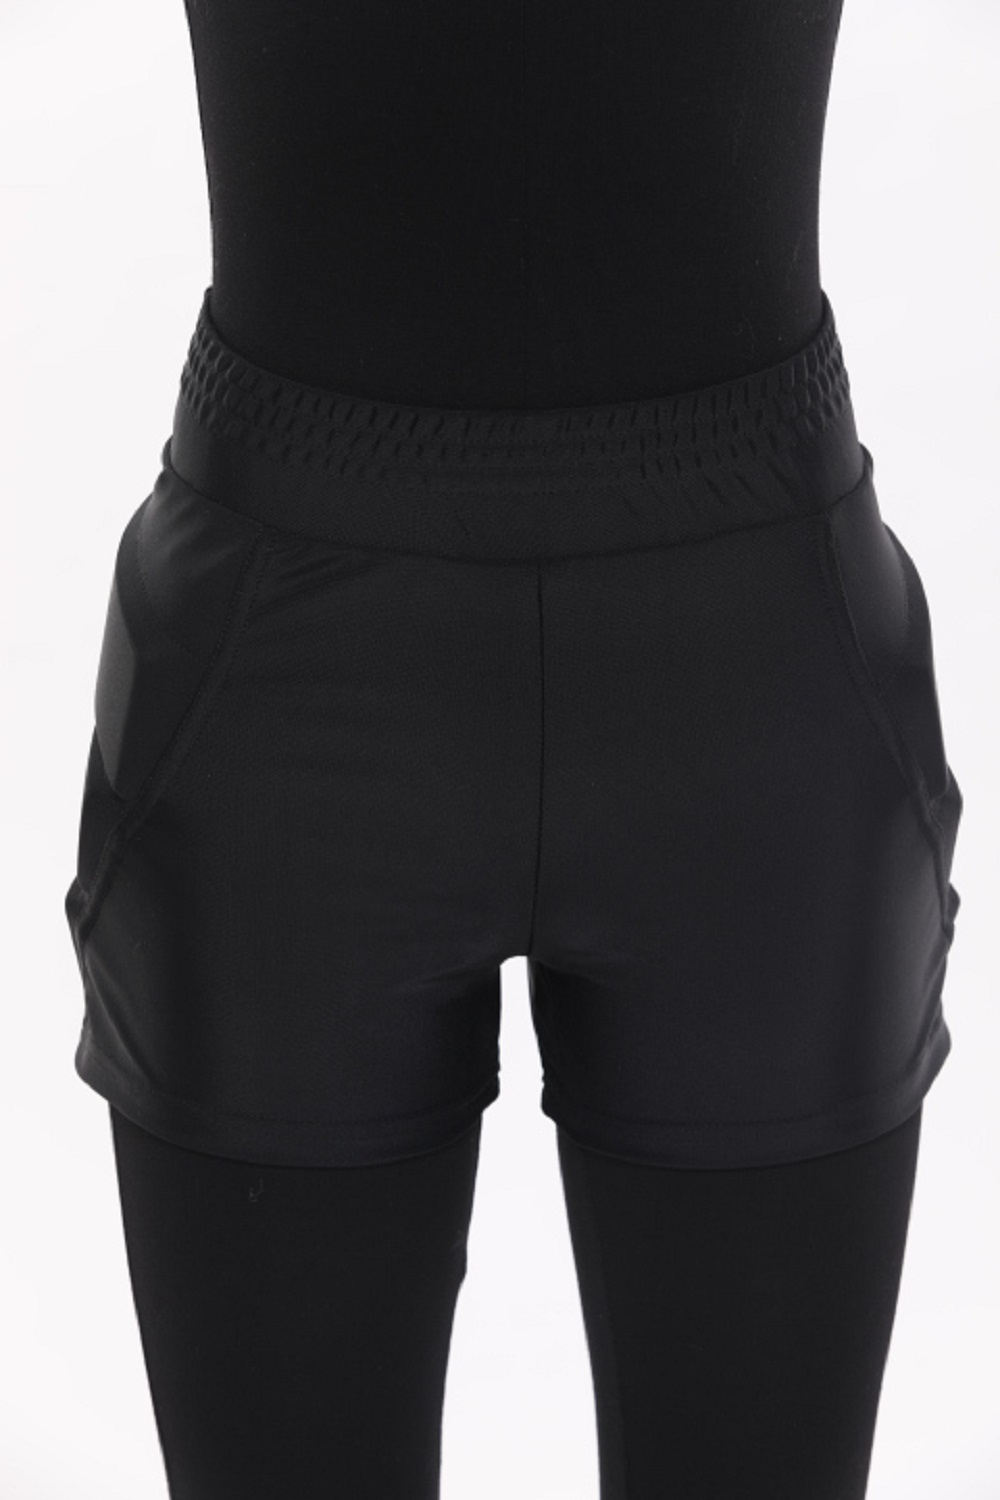 Защитные шорты усиленные для фигурного катания и роликов Chersa, цвет: черные 146-152